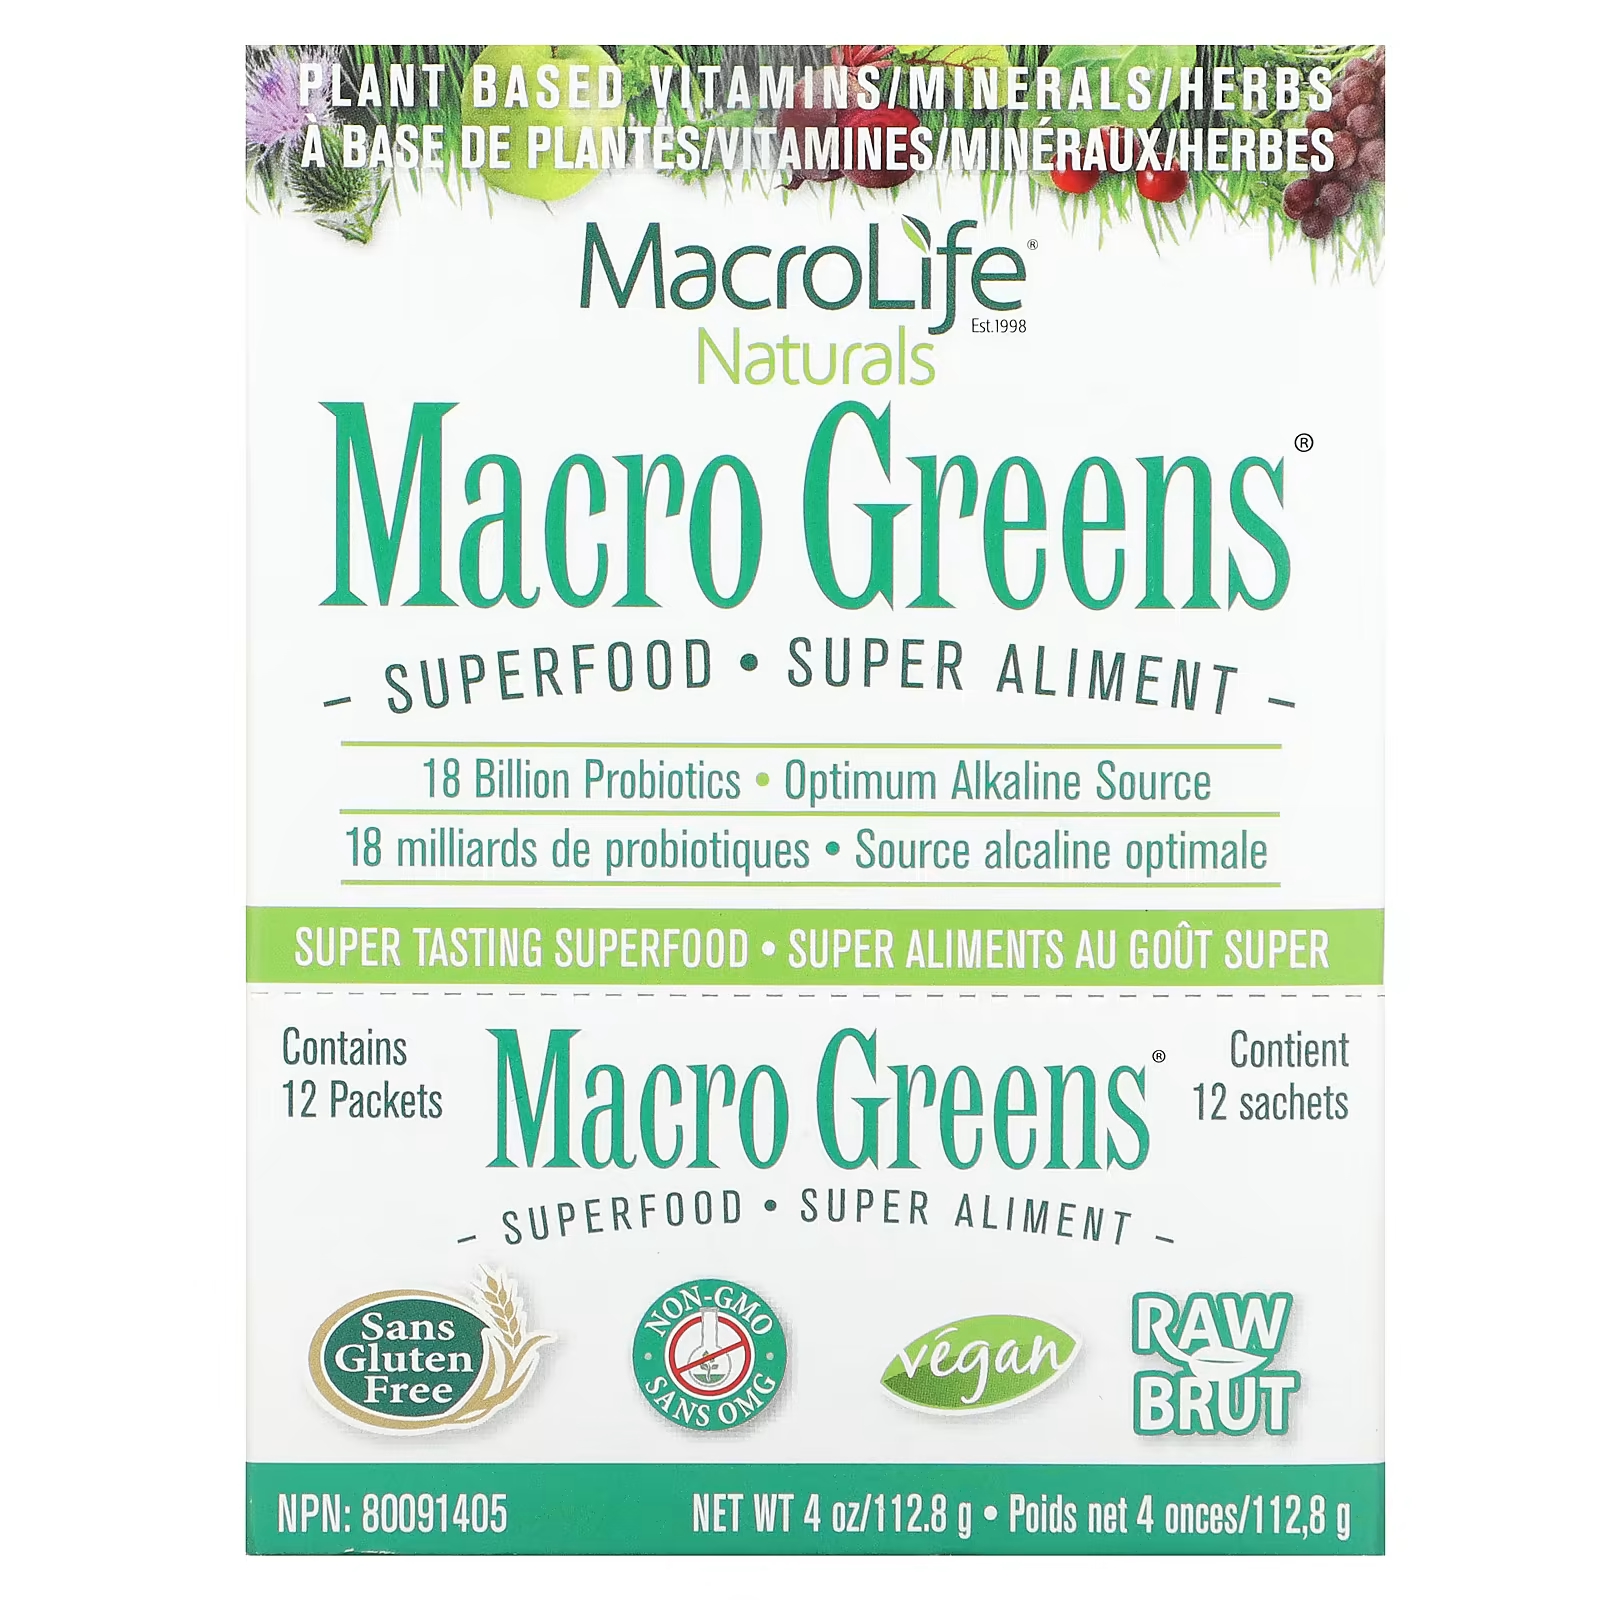 Macrolife Naturals Macro Greens Superfood 12 пакетов по 0,3 унции (9,4 г) каждый macrolife naturals macropets ежедневный суперфуд для собак и кошек 180 г 6 35 унции